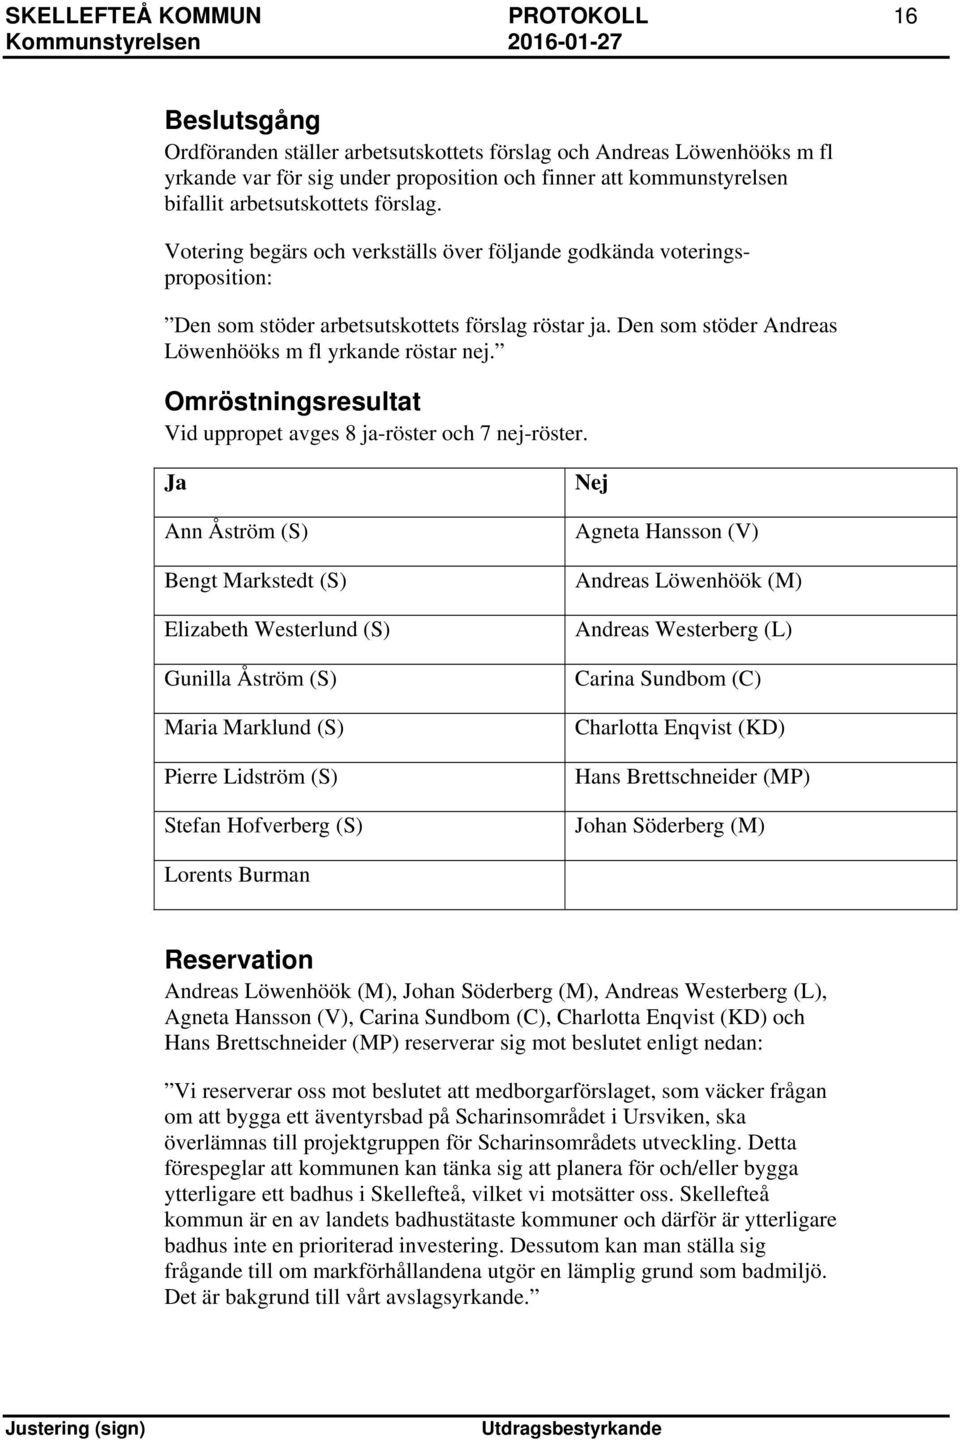 Den som stöder Andreas Löwenhööks m fl yrkande röstar nej. Omröstningsresultat Vid uppropet avges 8 ja-röster och 7 nej-röster.